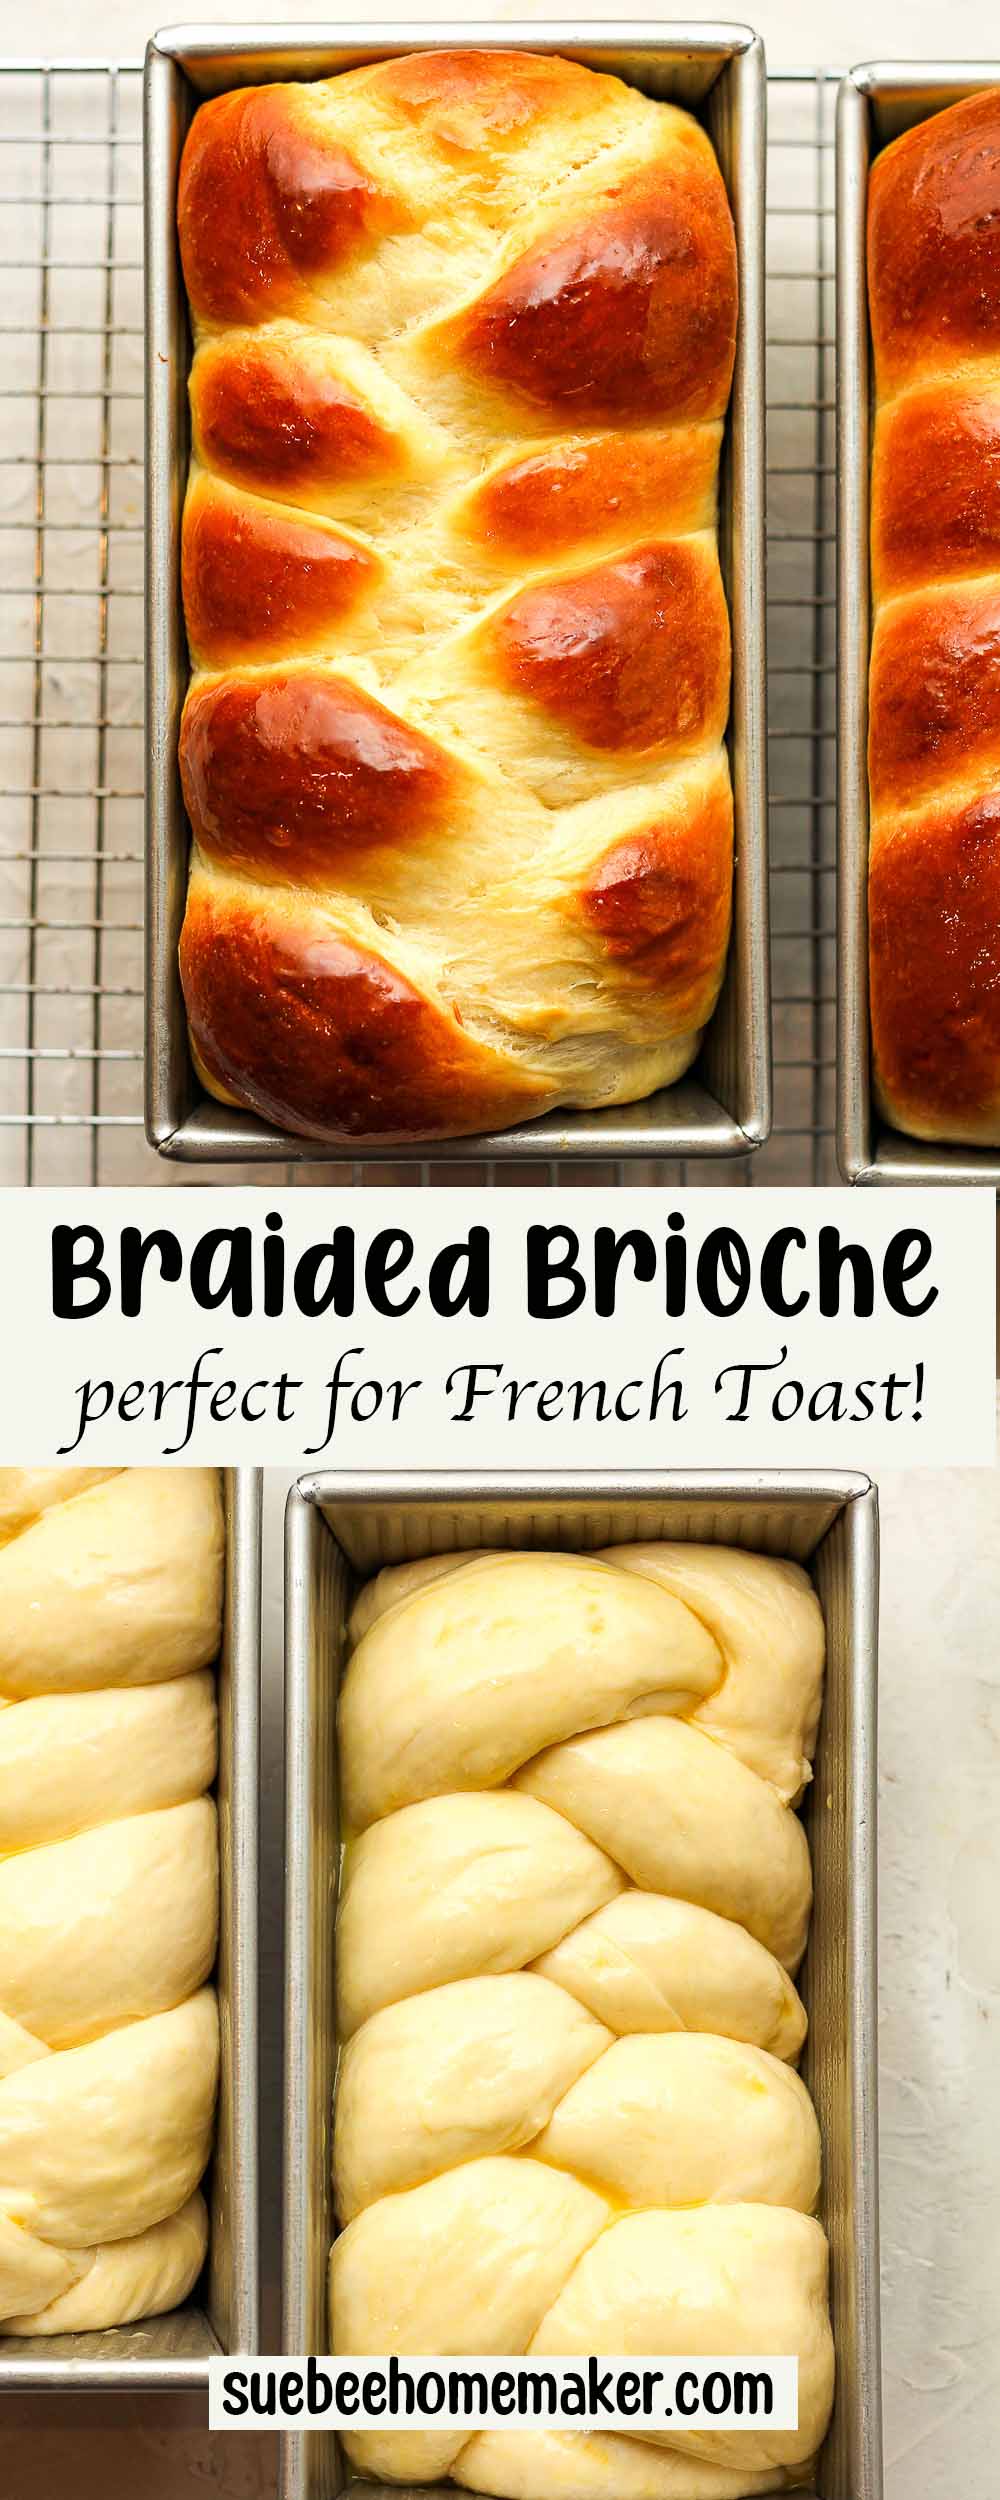 A collage of braided brioche bread.